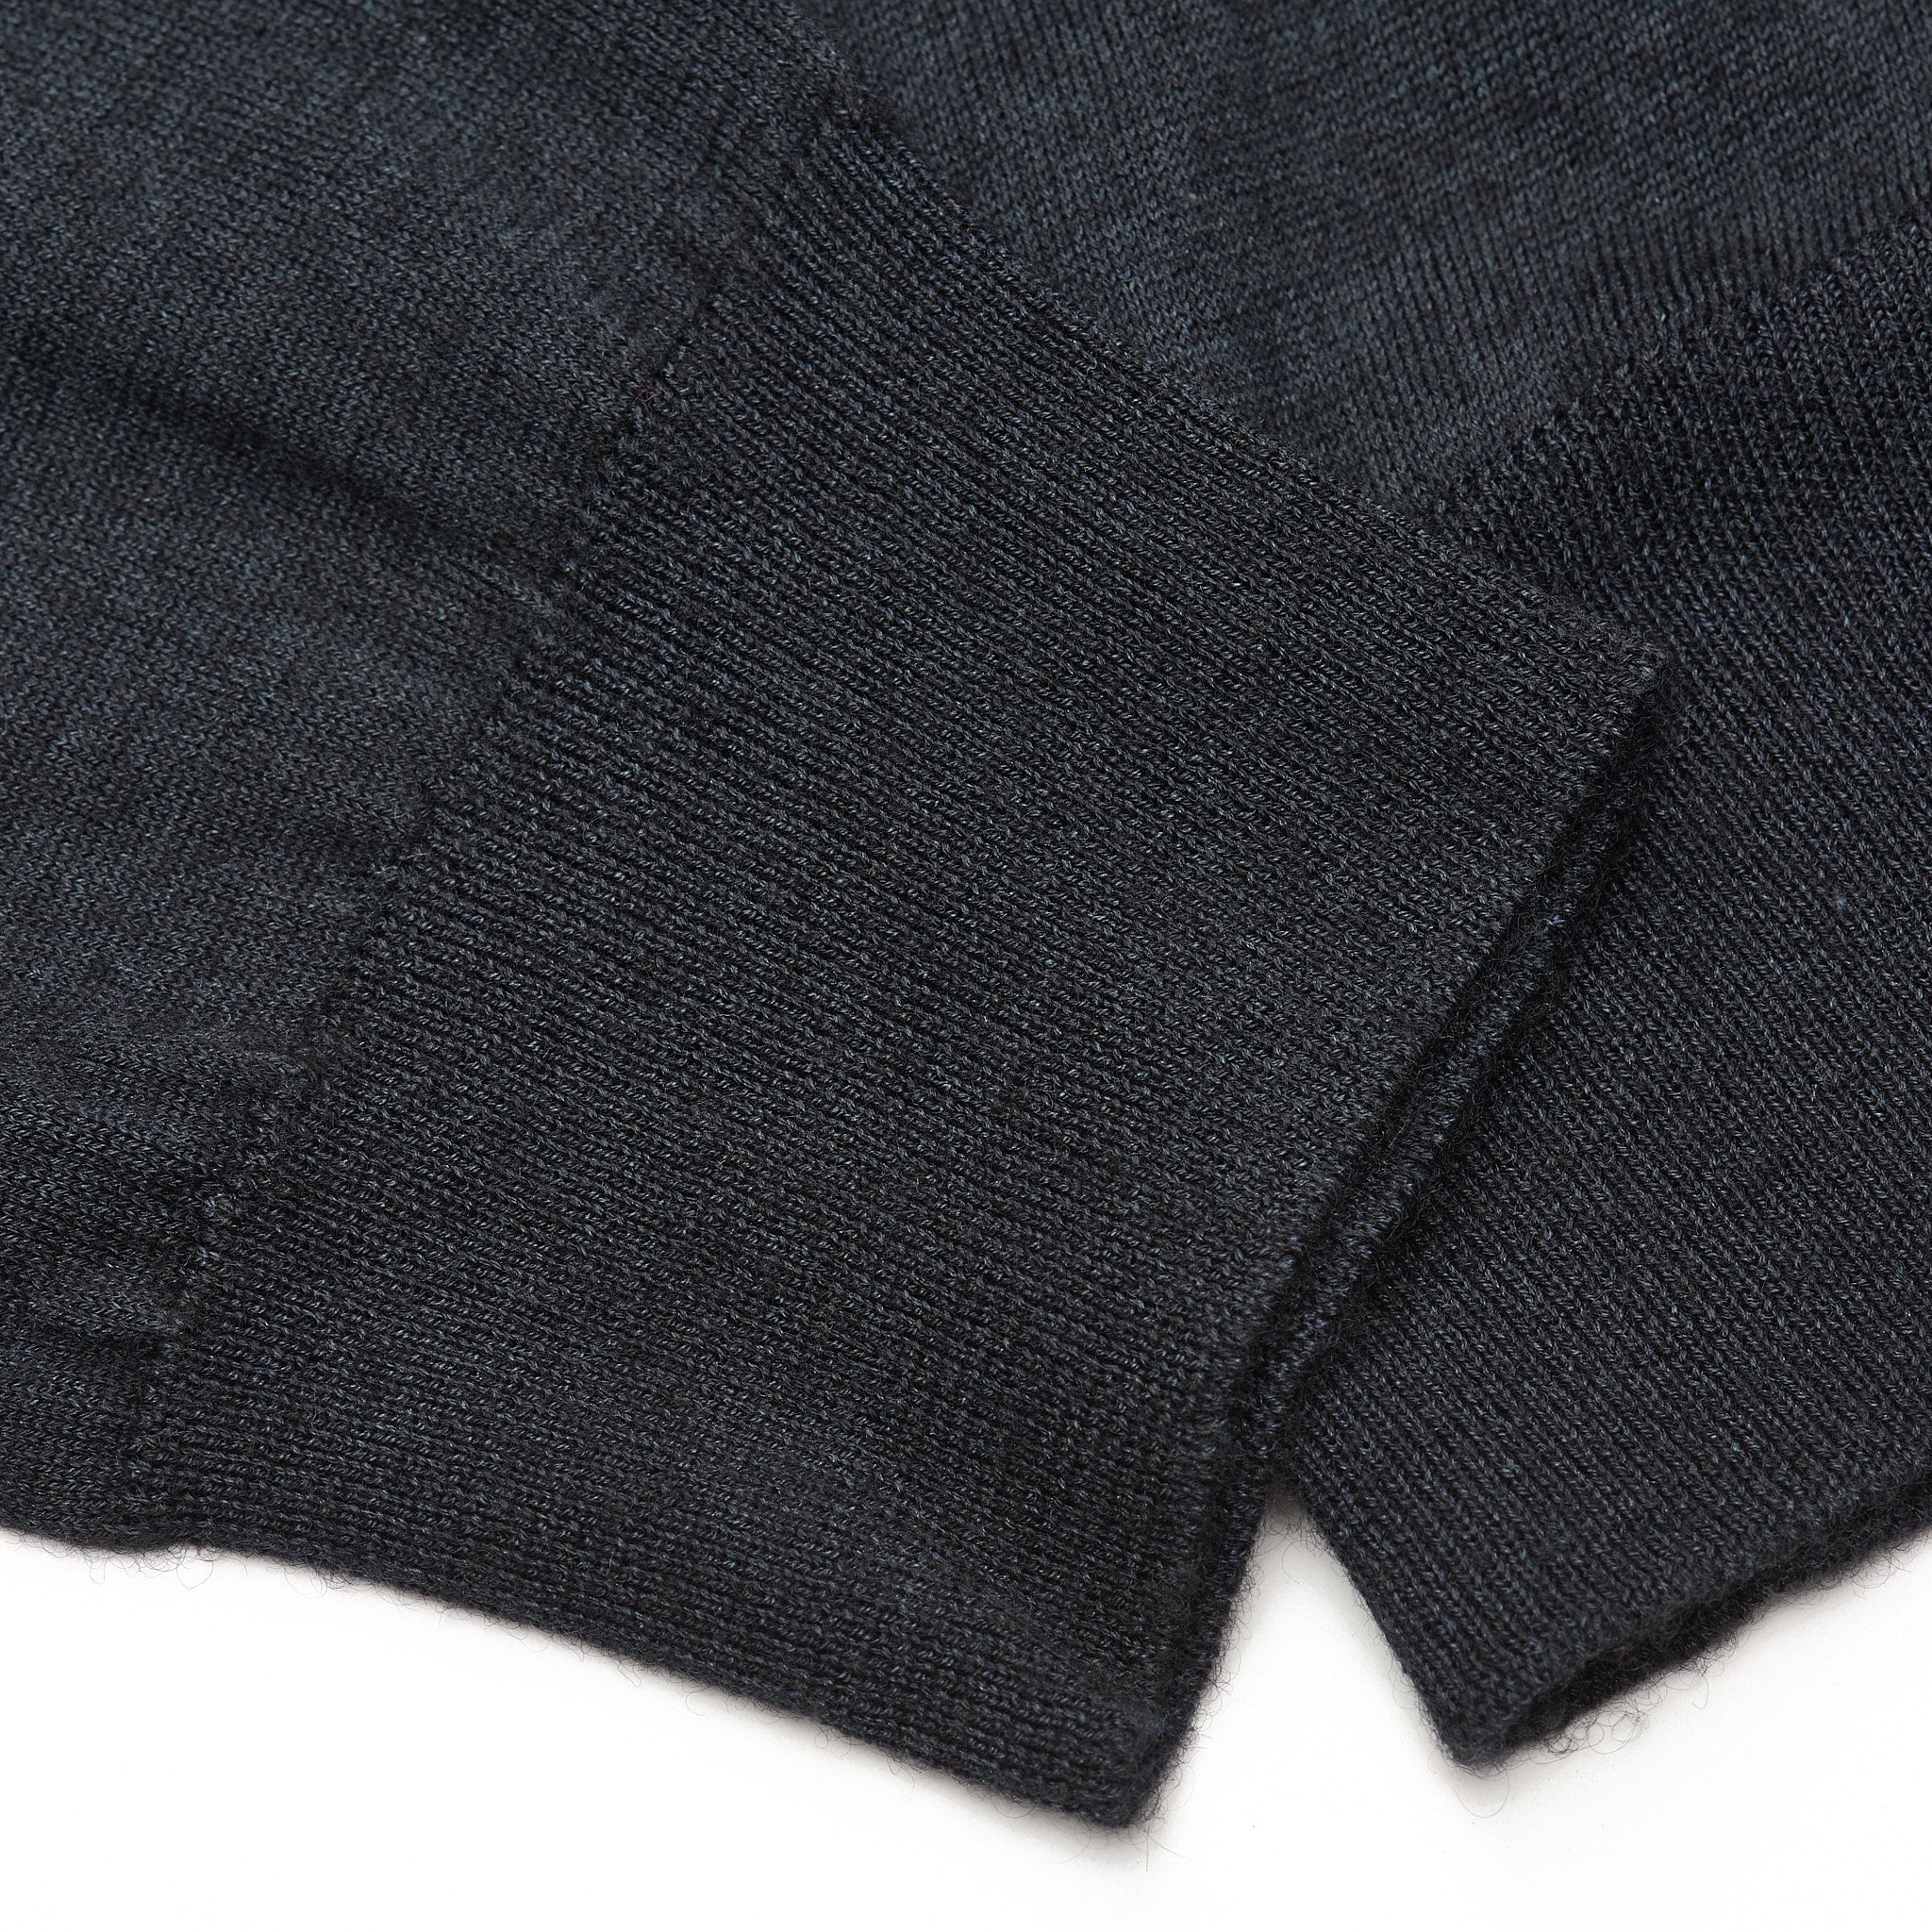 FEDELI Dark Gray Cashmere-Silk V-Neck Sweater EU 52 NEW US L Slim Fit FEDELI